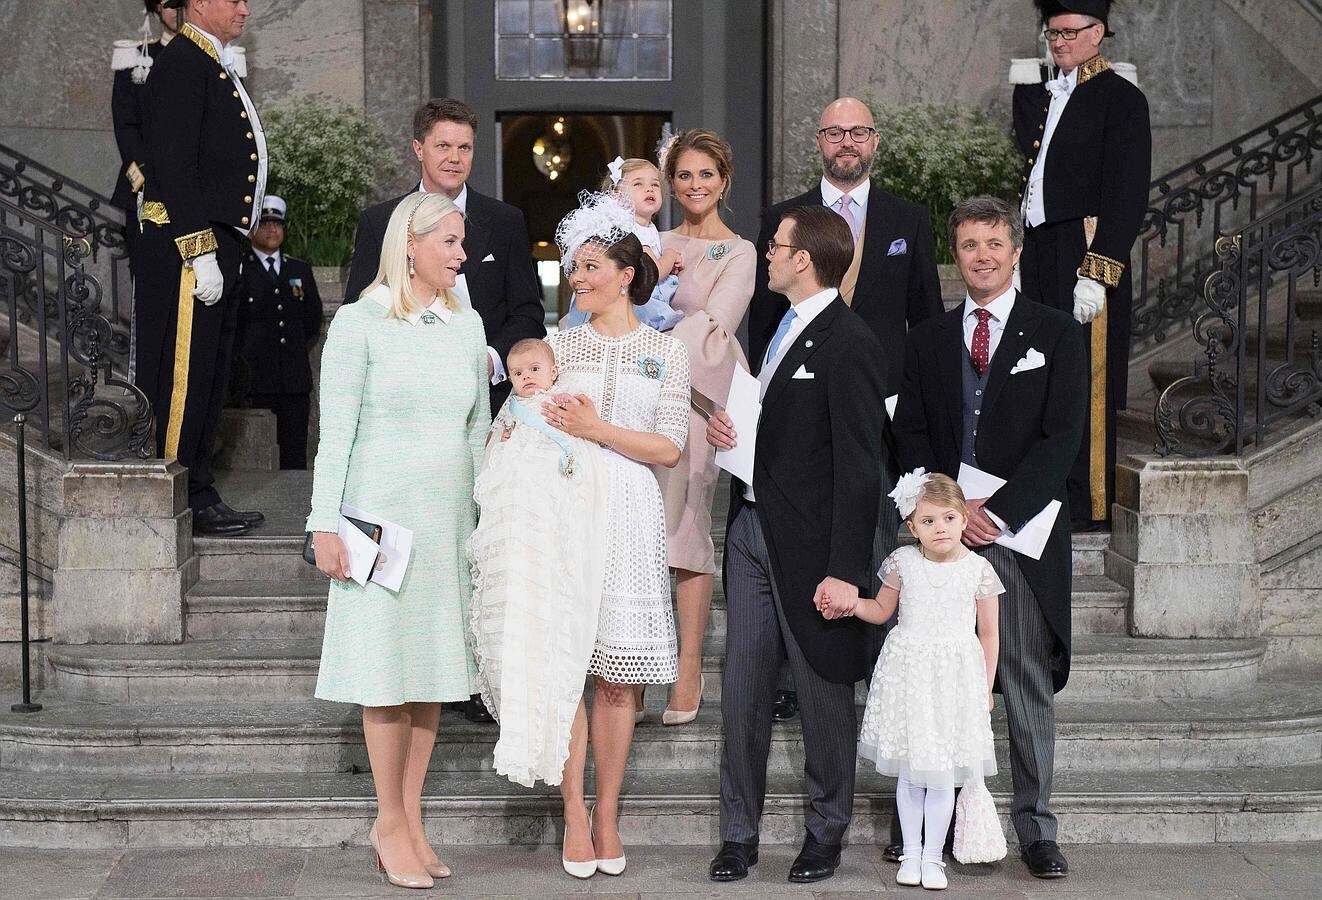 Los padres han escogido como padrinos Príncipe Federico de Dinamarca y la Princesa Mette-Marit de Noruega, la Princesa Magdalena de Suecia